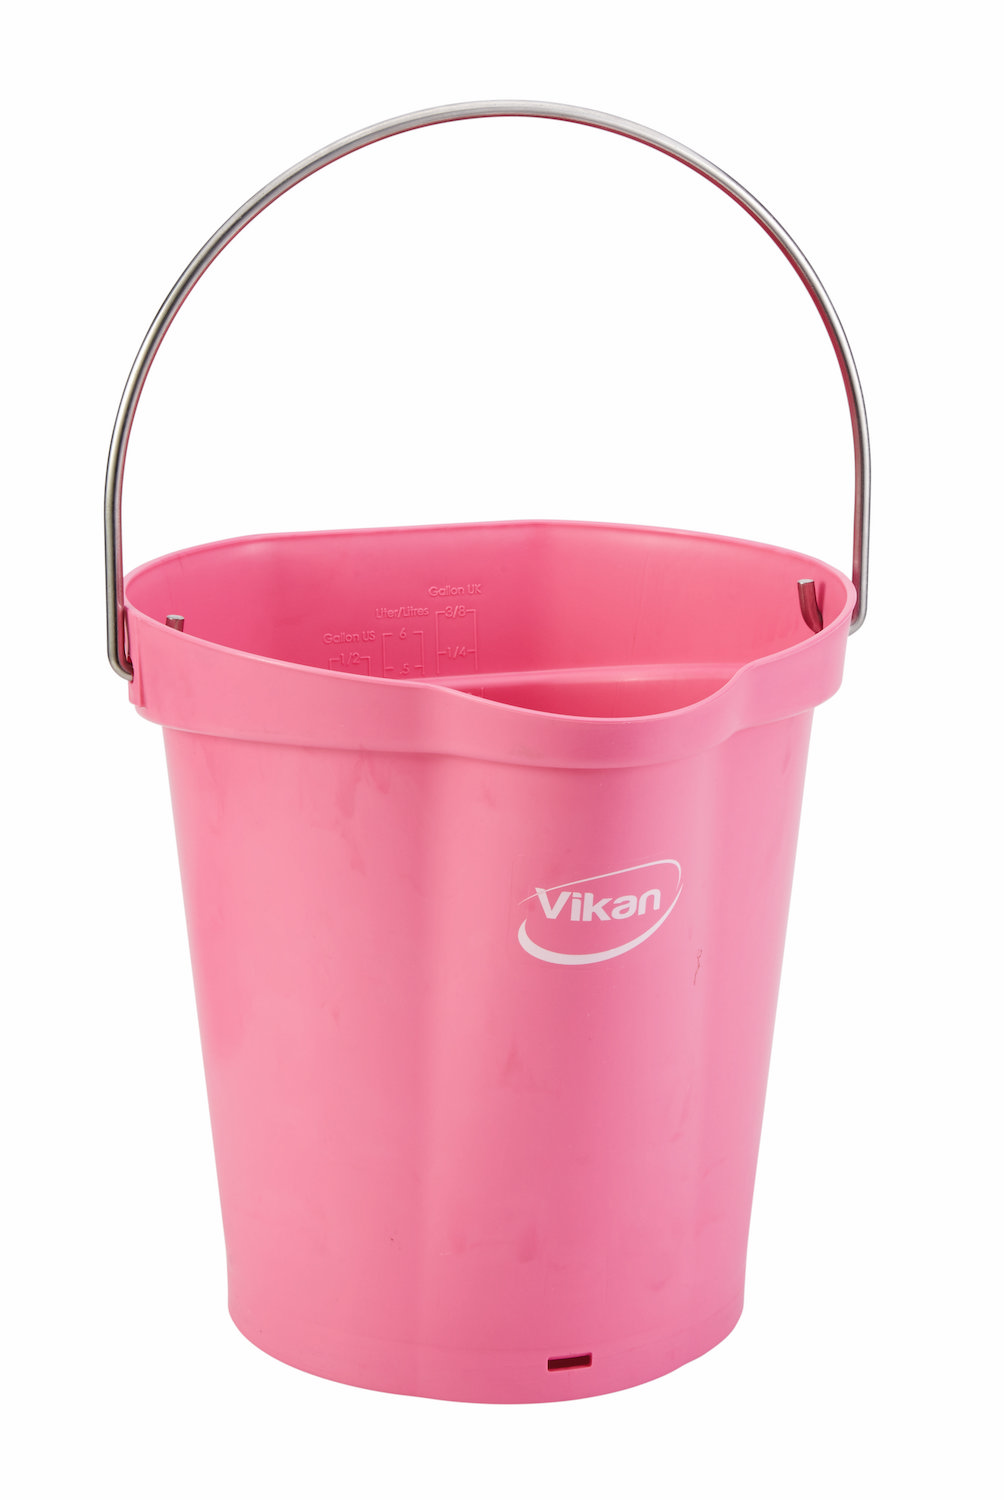 Bucket, 6 Litre, Pink